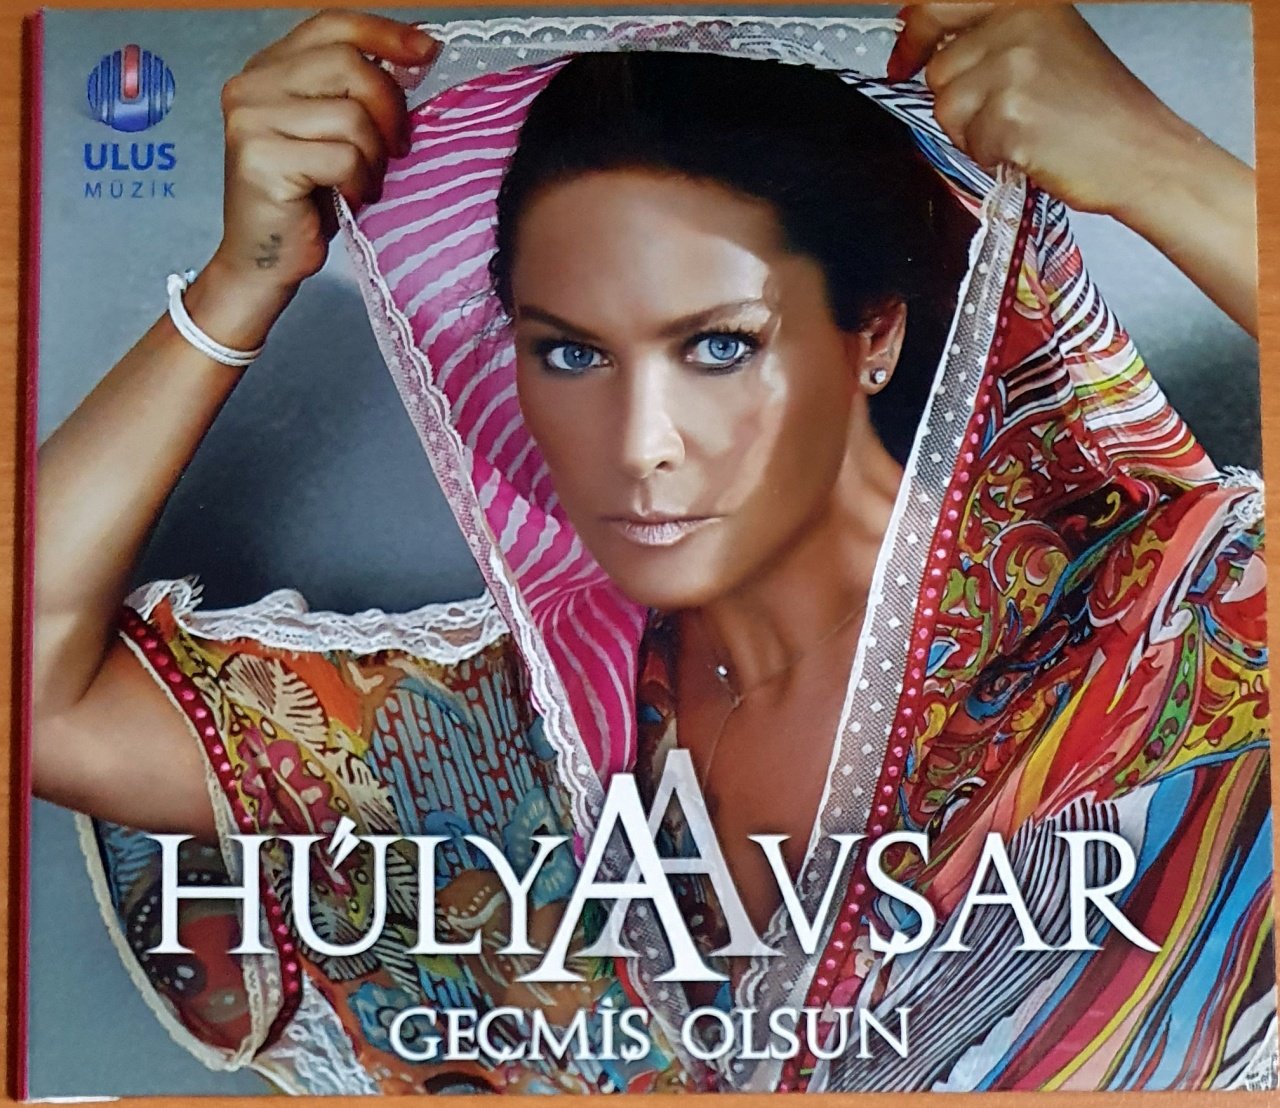 HÜLYA AVŞAR - GEÇMİŞ OLSUN (2011) - CD SINGLE 2.EL